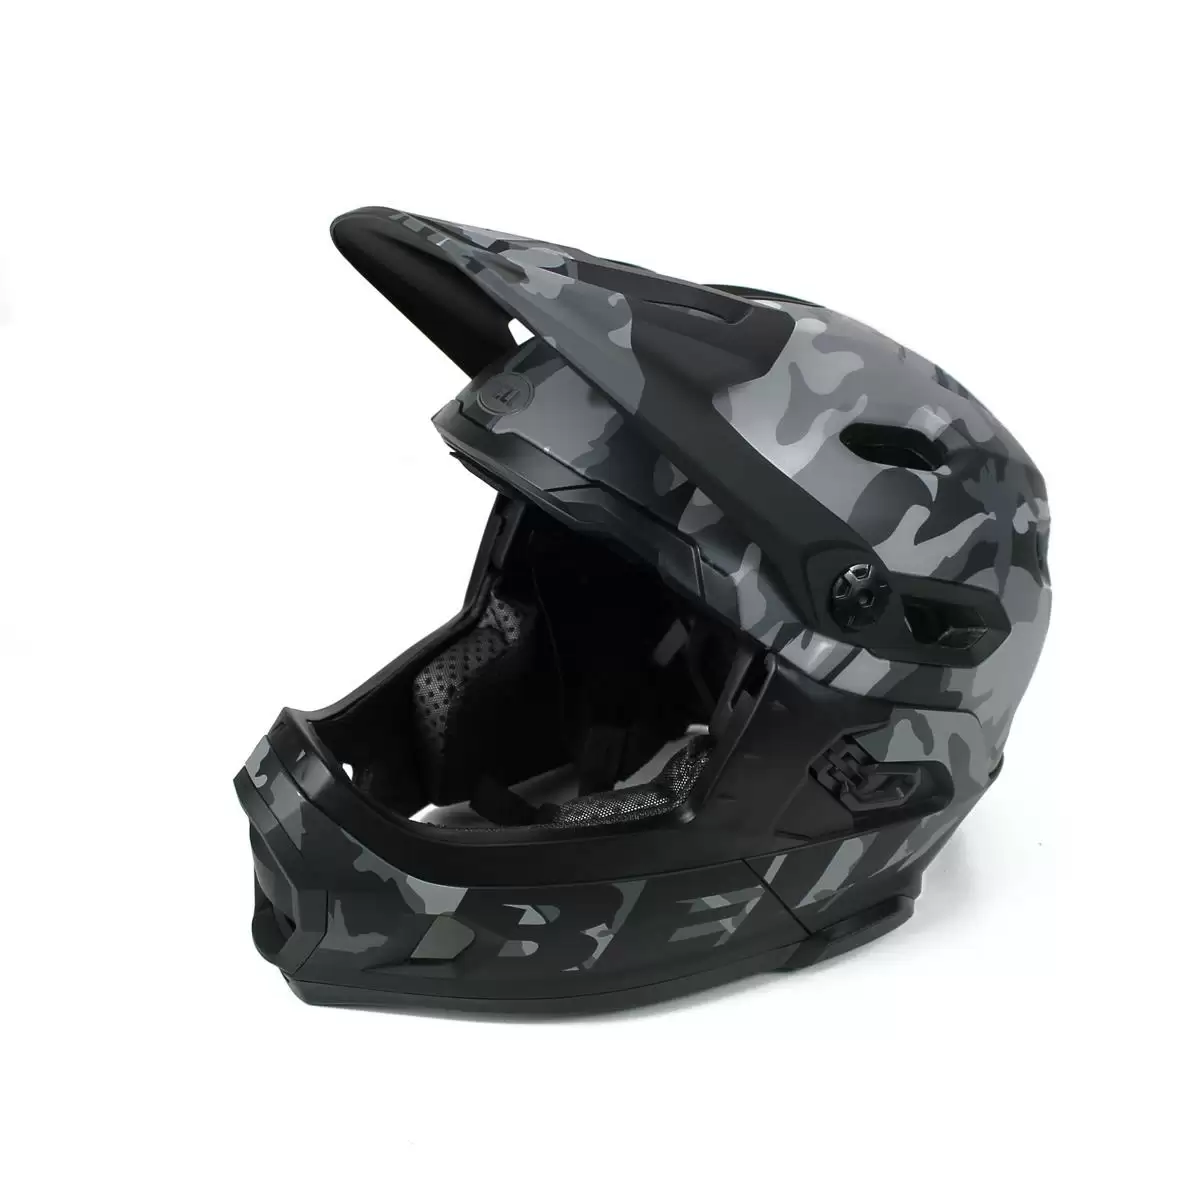 Helm Super DH MIPS Black Camo Größe L (59-62cm) #1